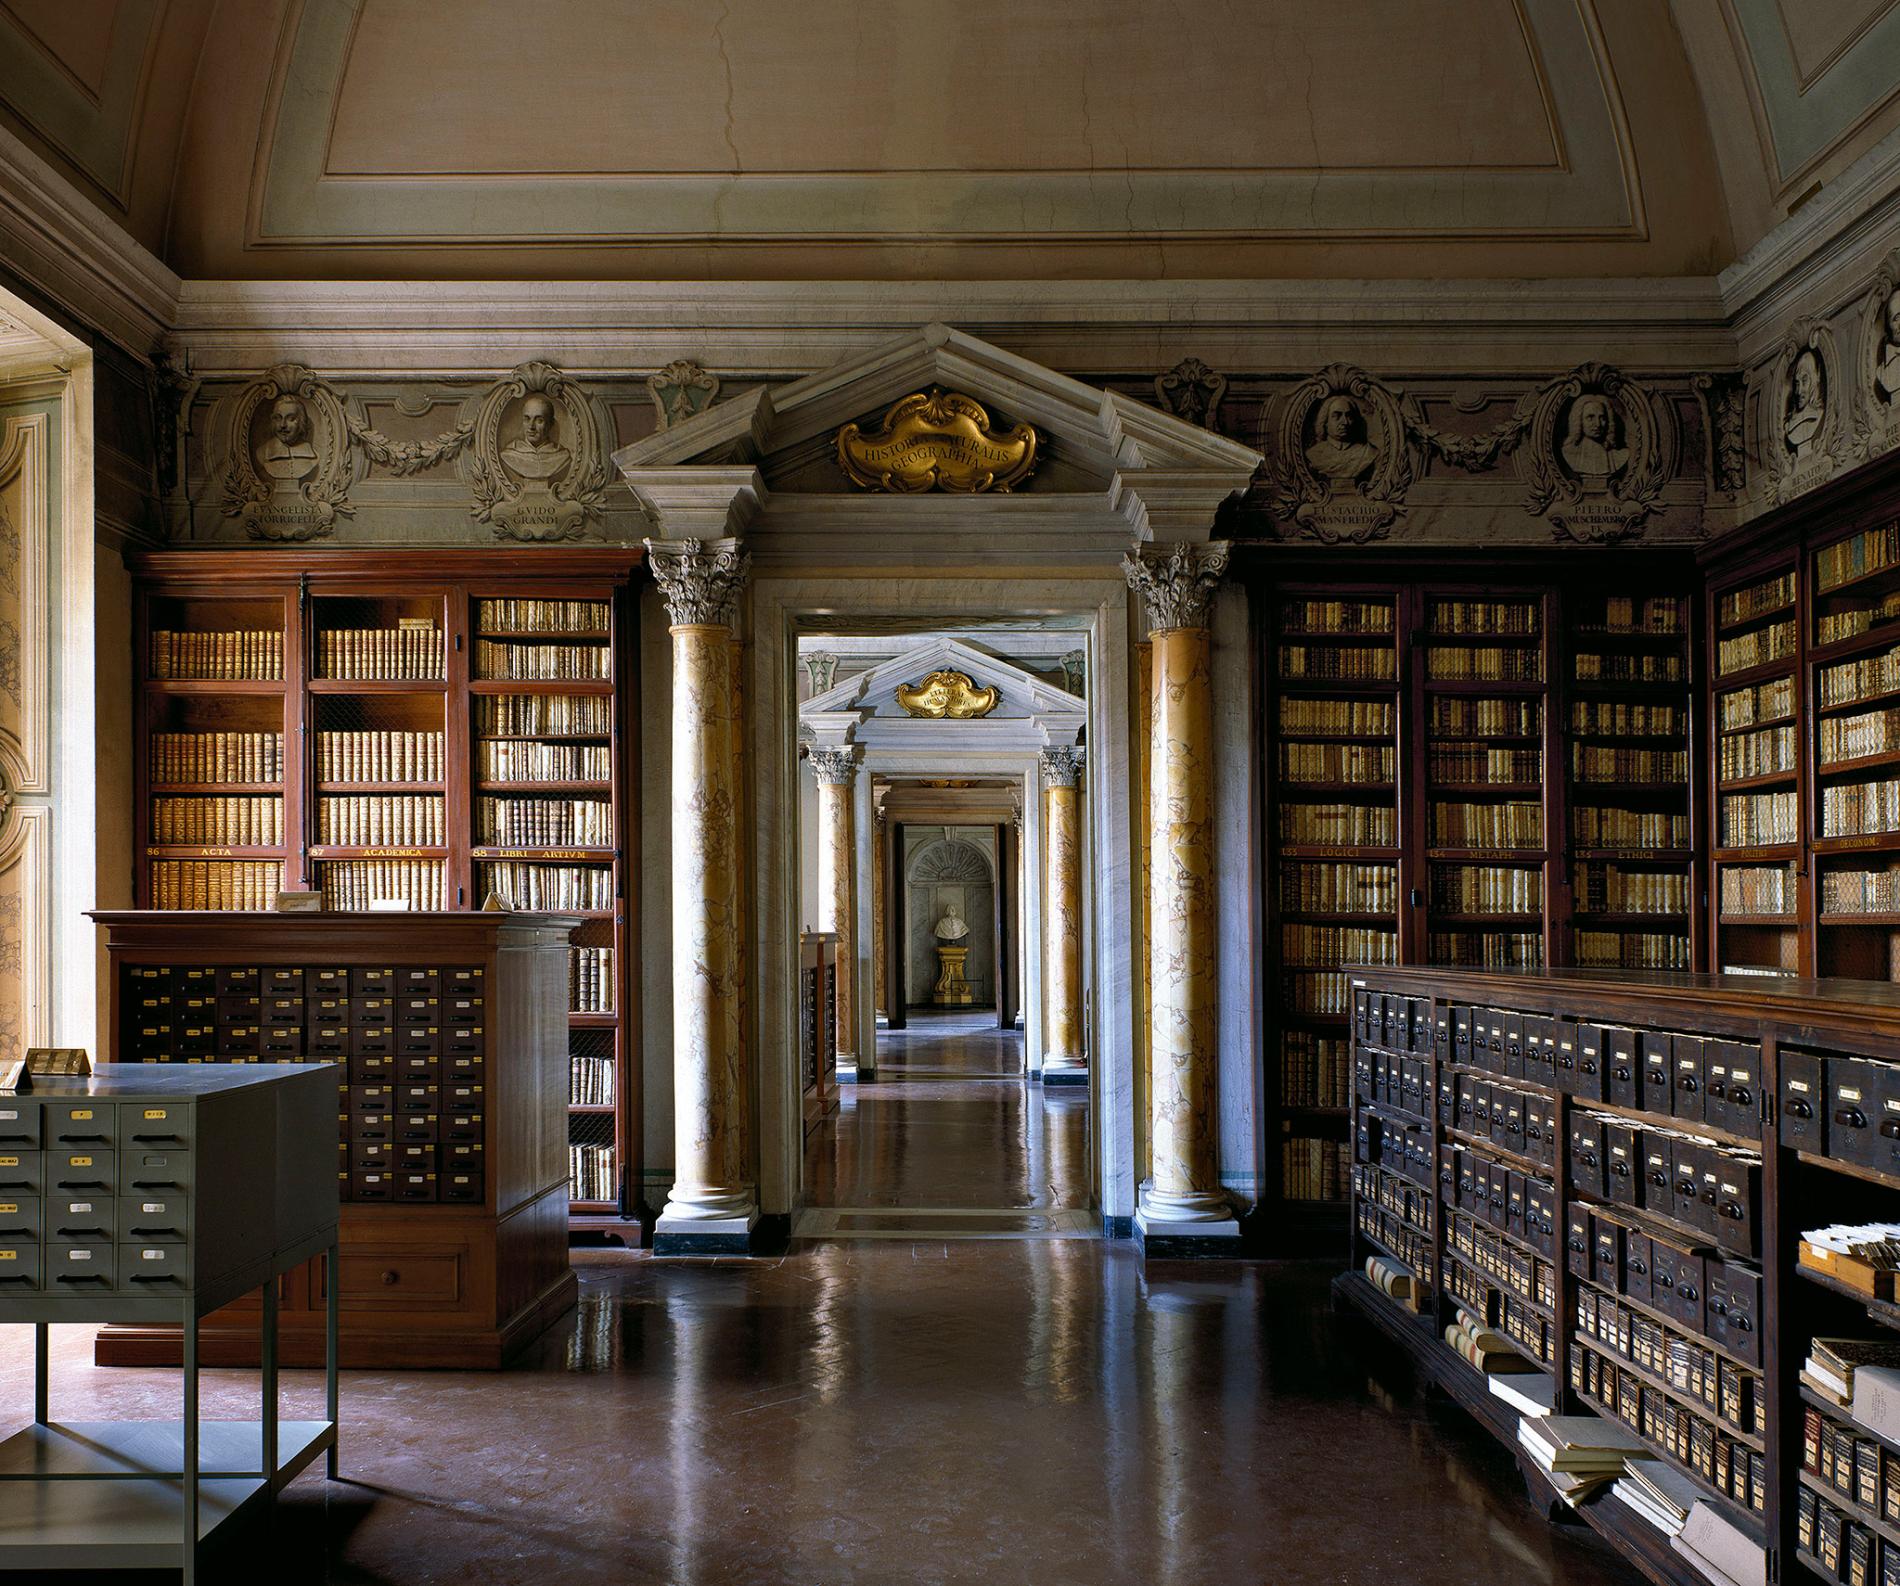 Библиотека. Библиотека Анжелика Рим Италия. Национальная библиотека Брайденсе в Милане. Библиотека Джироламини Италия. Национальная библиотека в Риме.